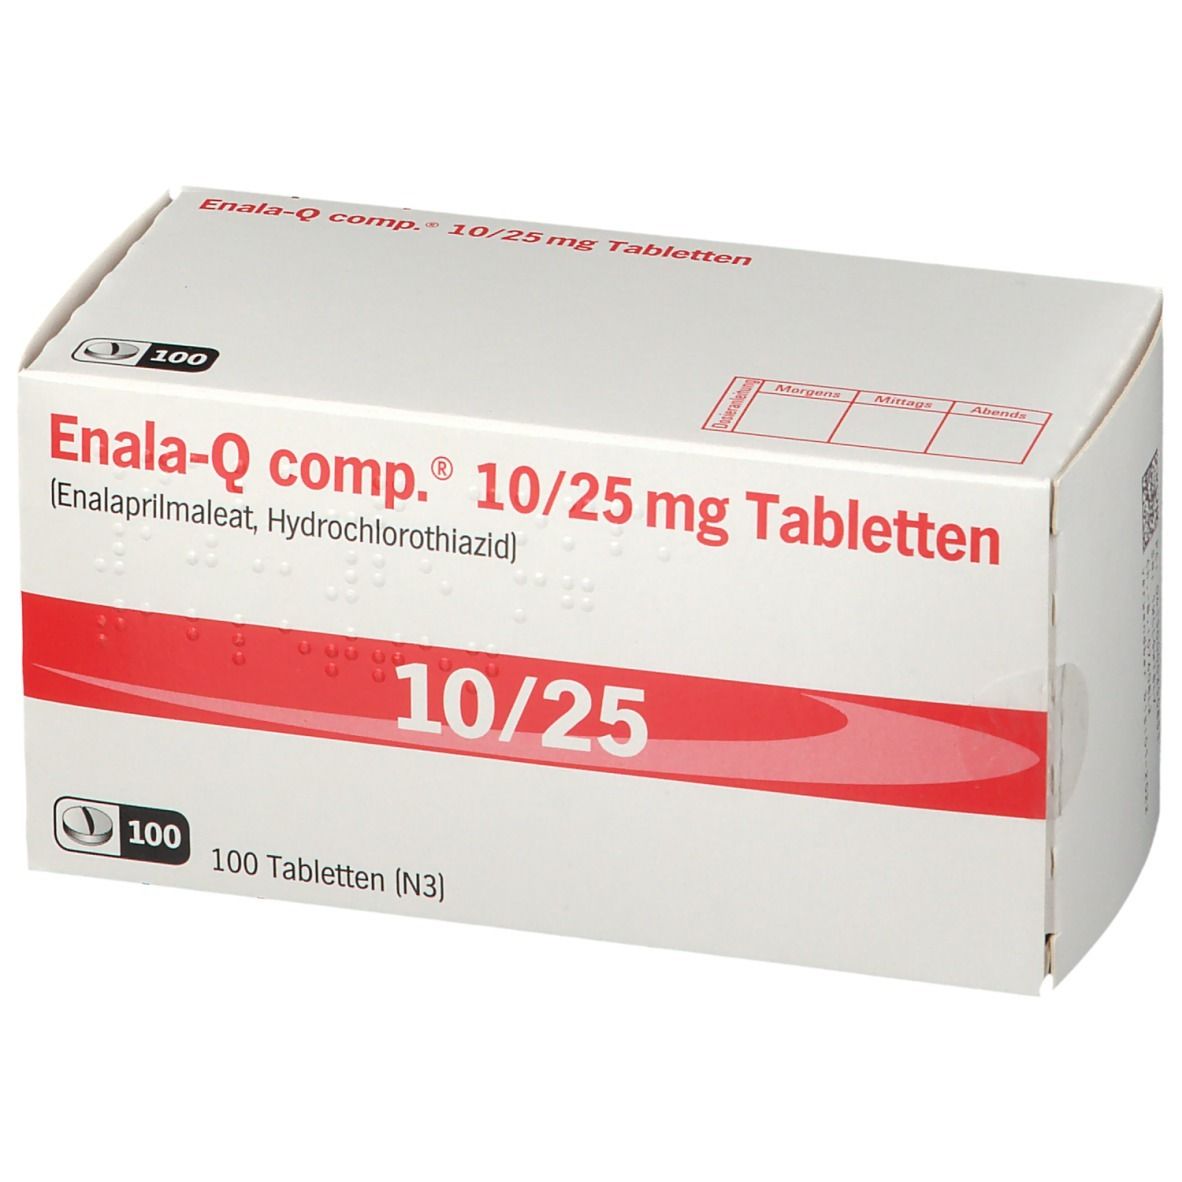 Enala-Q comp.® 10/25 mg